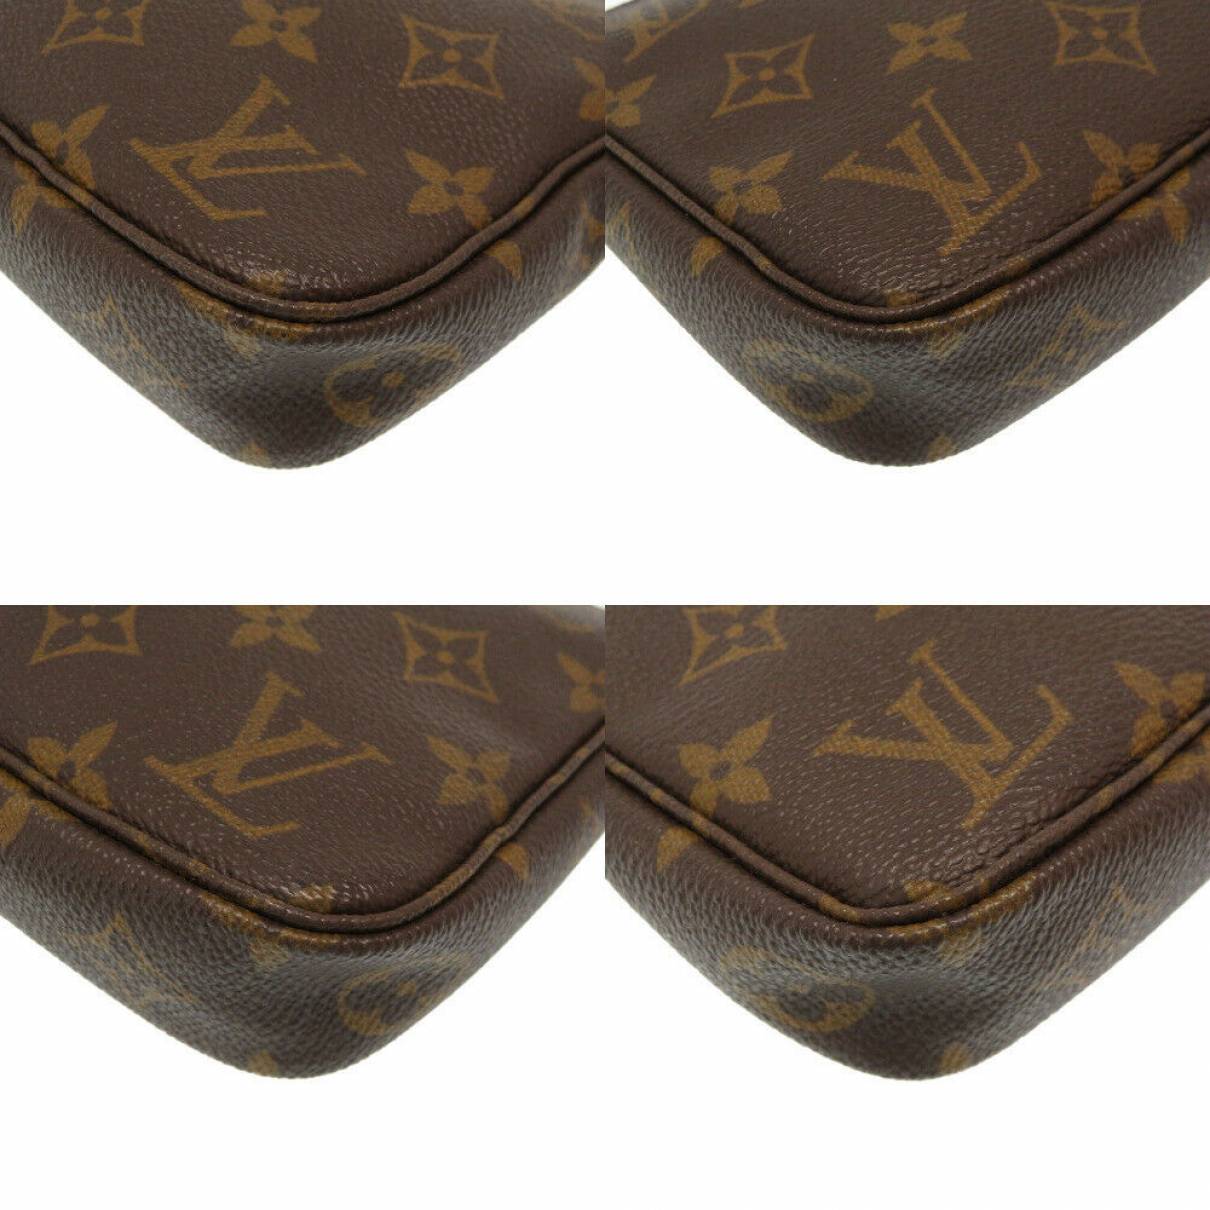 Pochette accessoire cloth handbag Louis Vuitton Brown in Cloth - 28085220